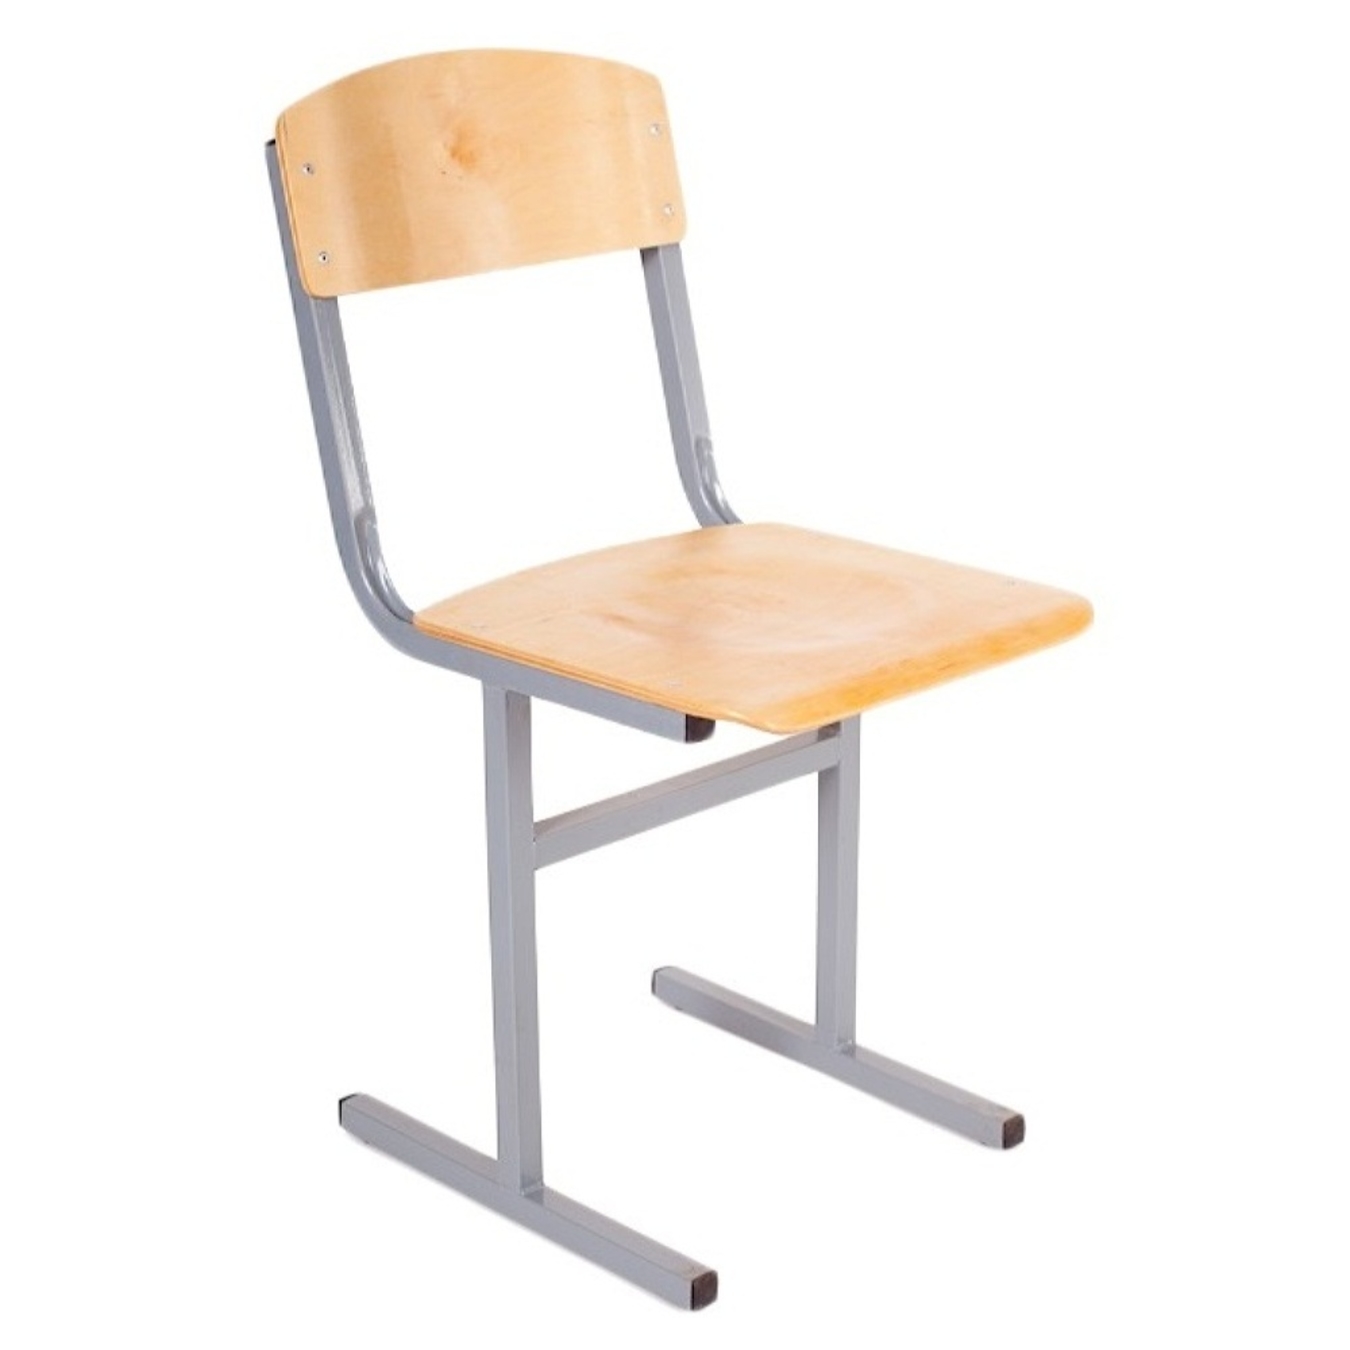 стулья для школьных парт